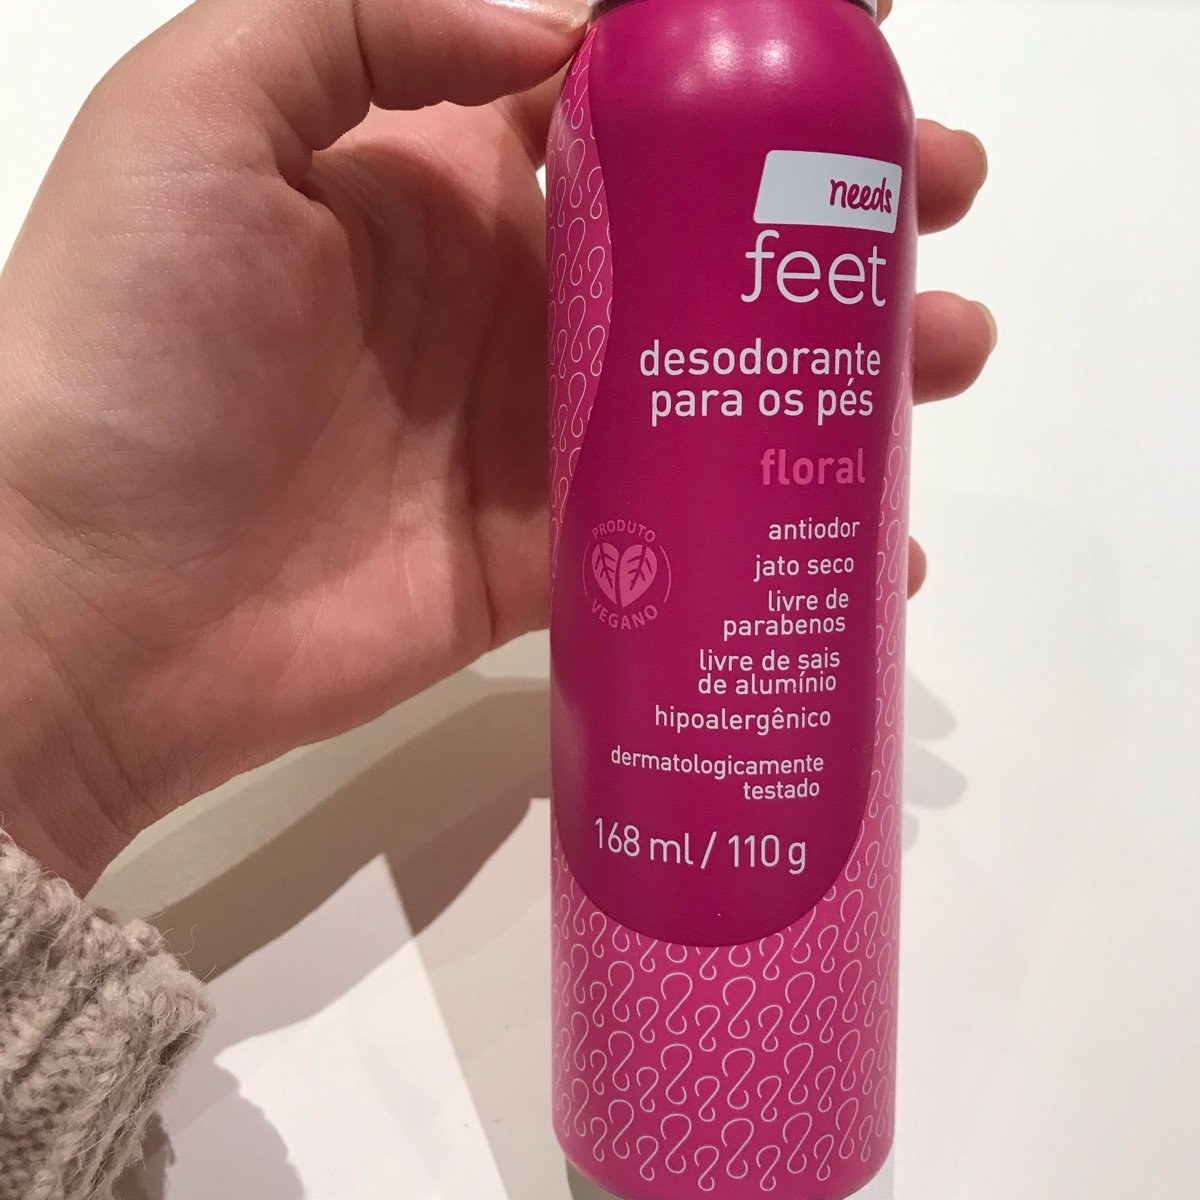 Vegan by Needs Desodorante Para Os Pés Reviews | abillion